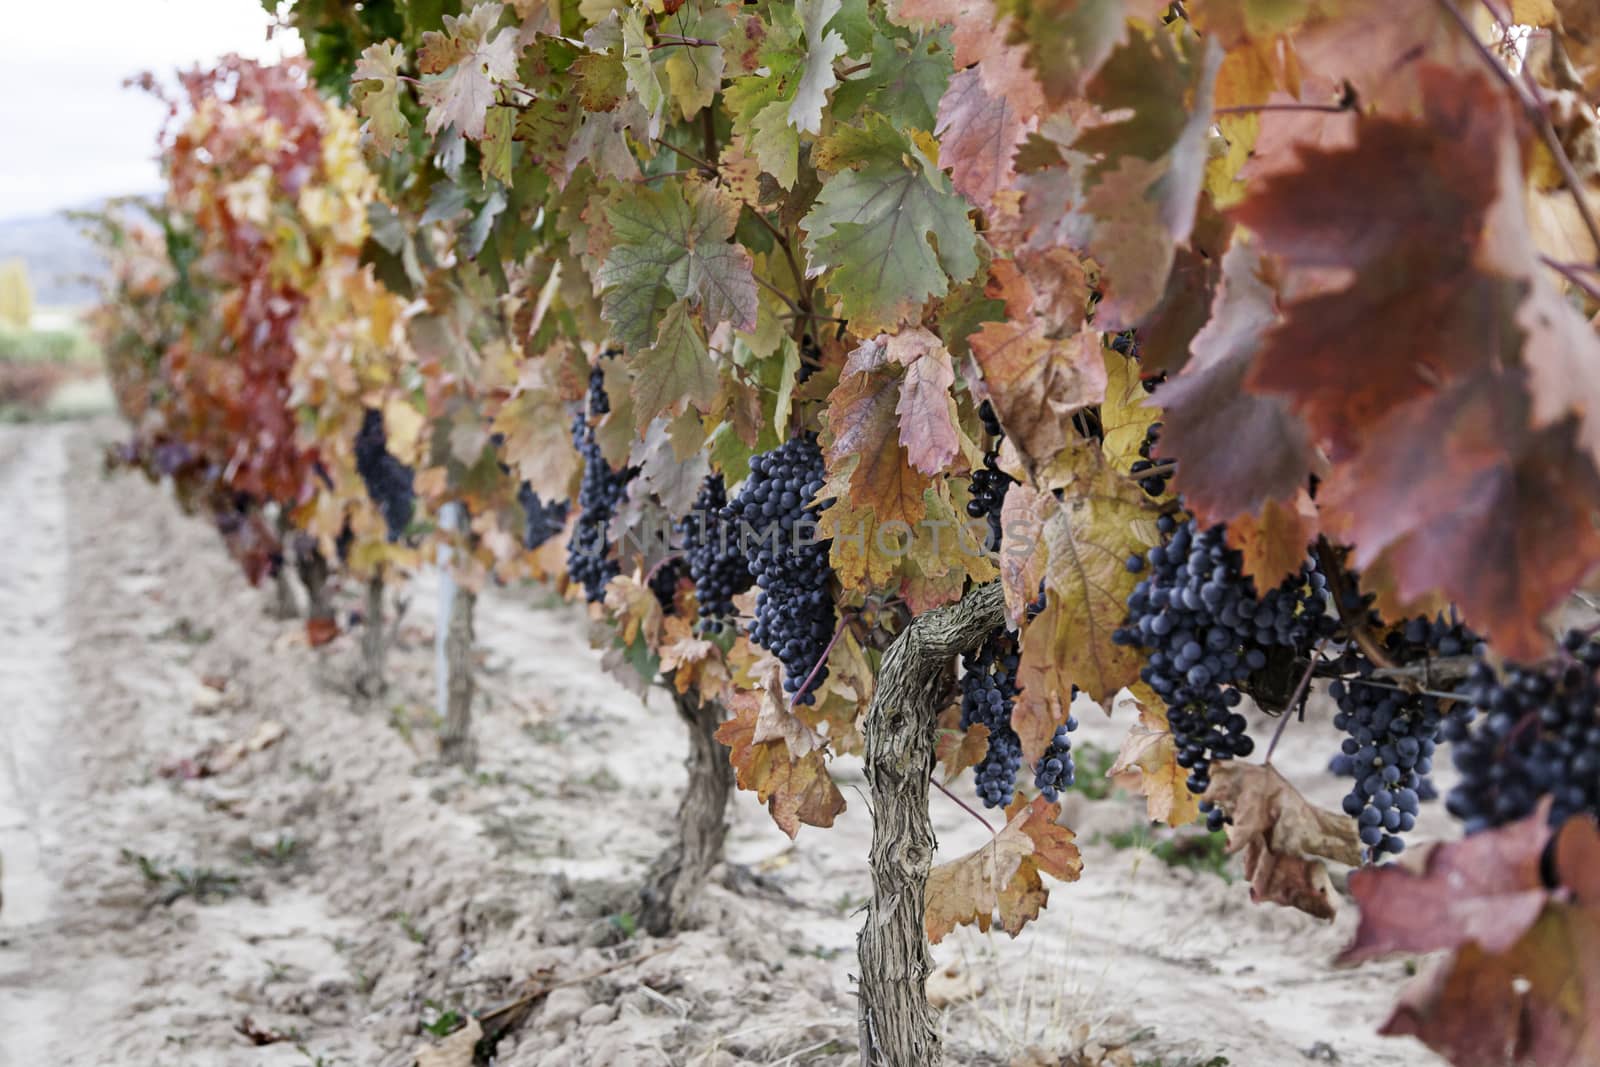 Grape vines in the field by esebene